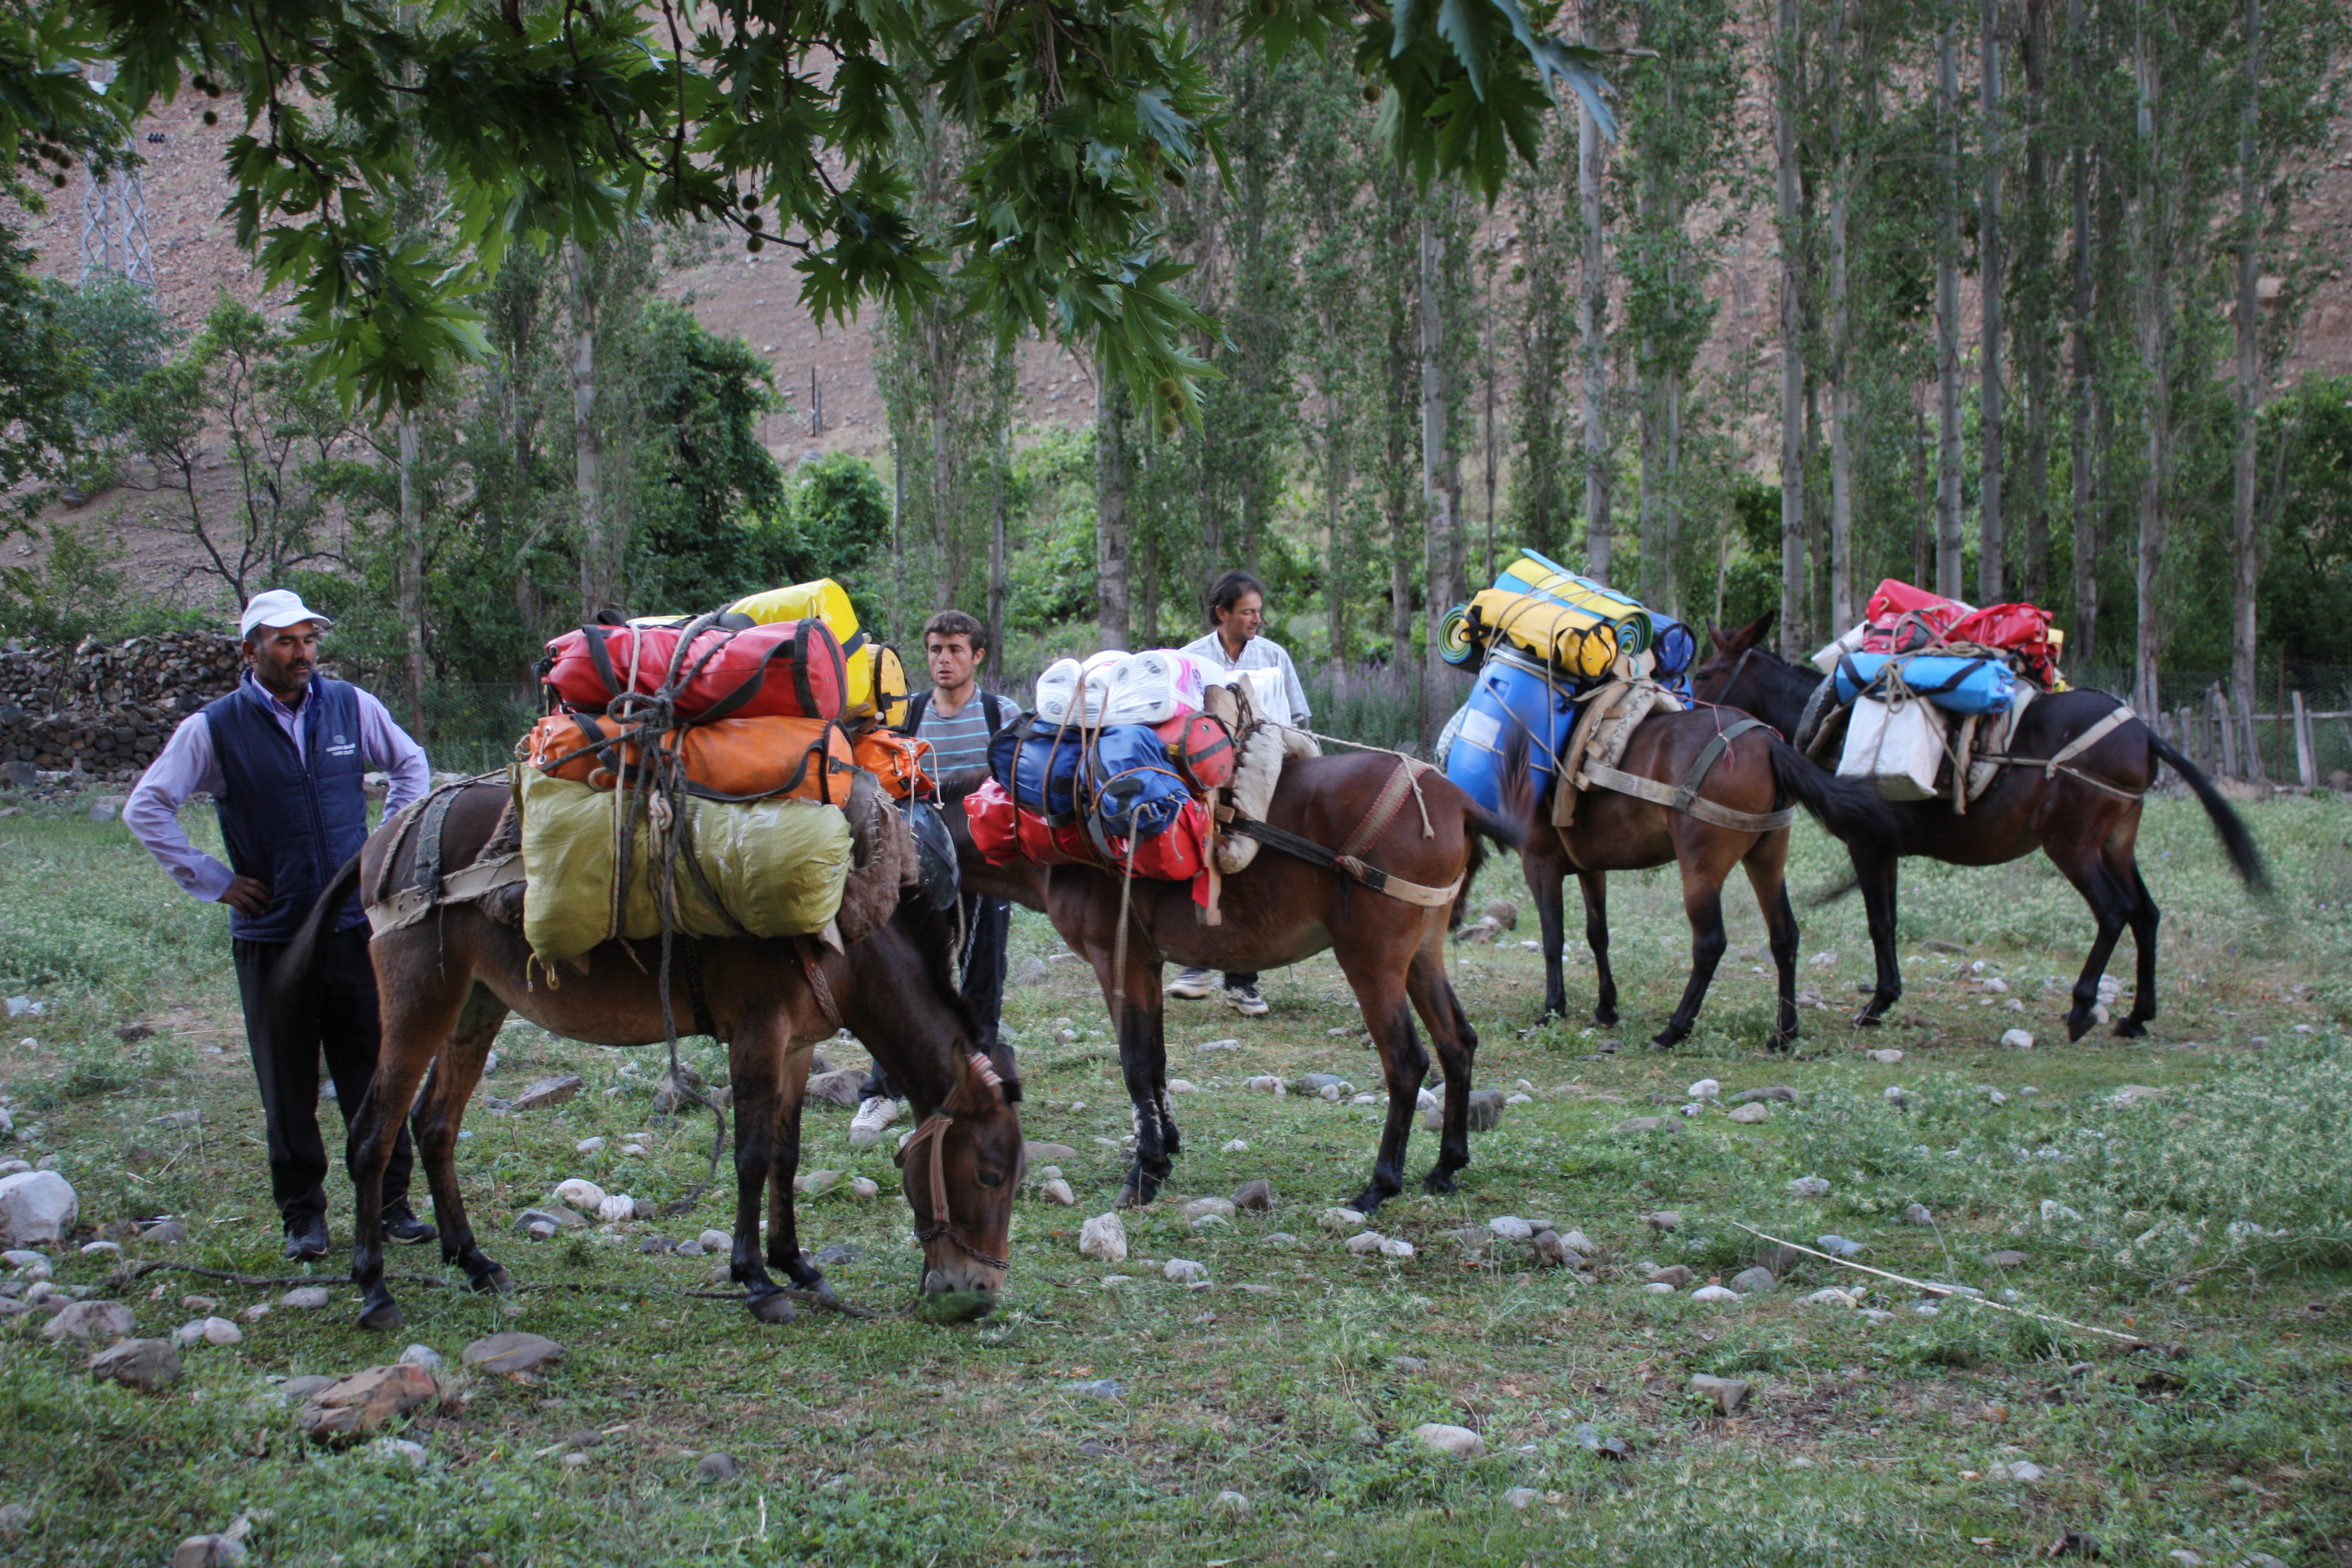 Сборы мулов в Уулупинаре для заброски снаряжения, продуктов, оборудования. Всего 7 мулов по 80 кг на каждого.